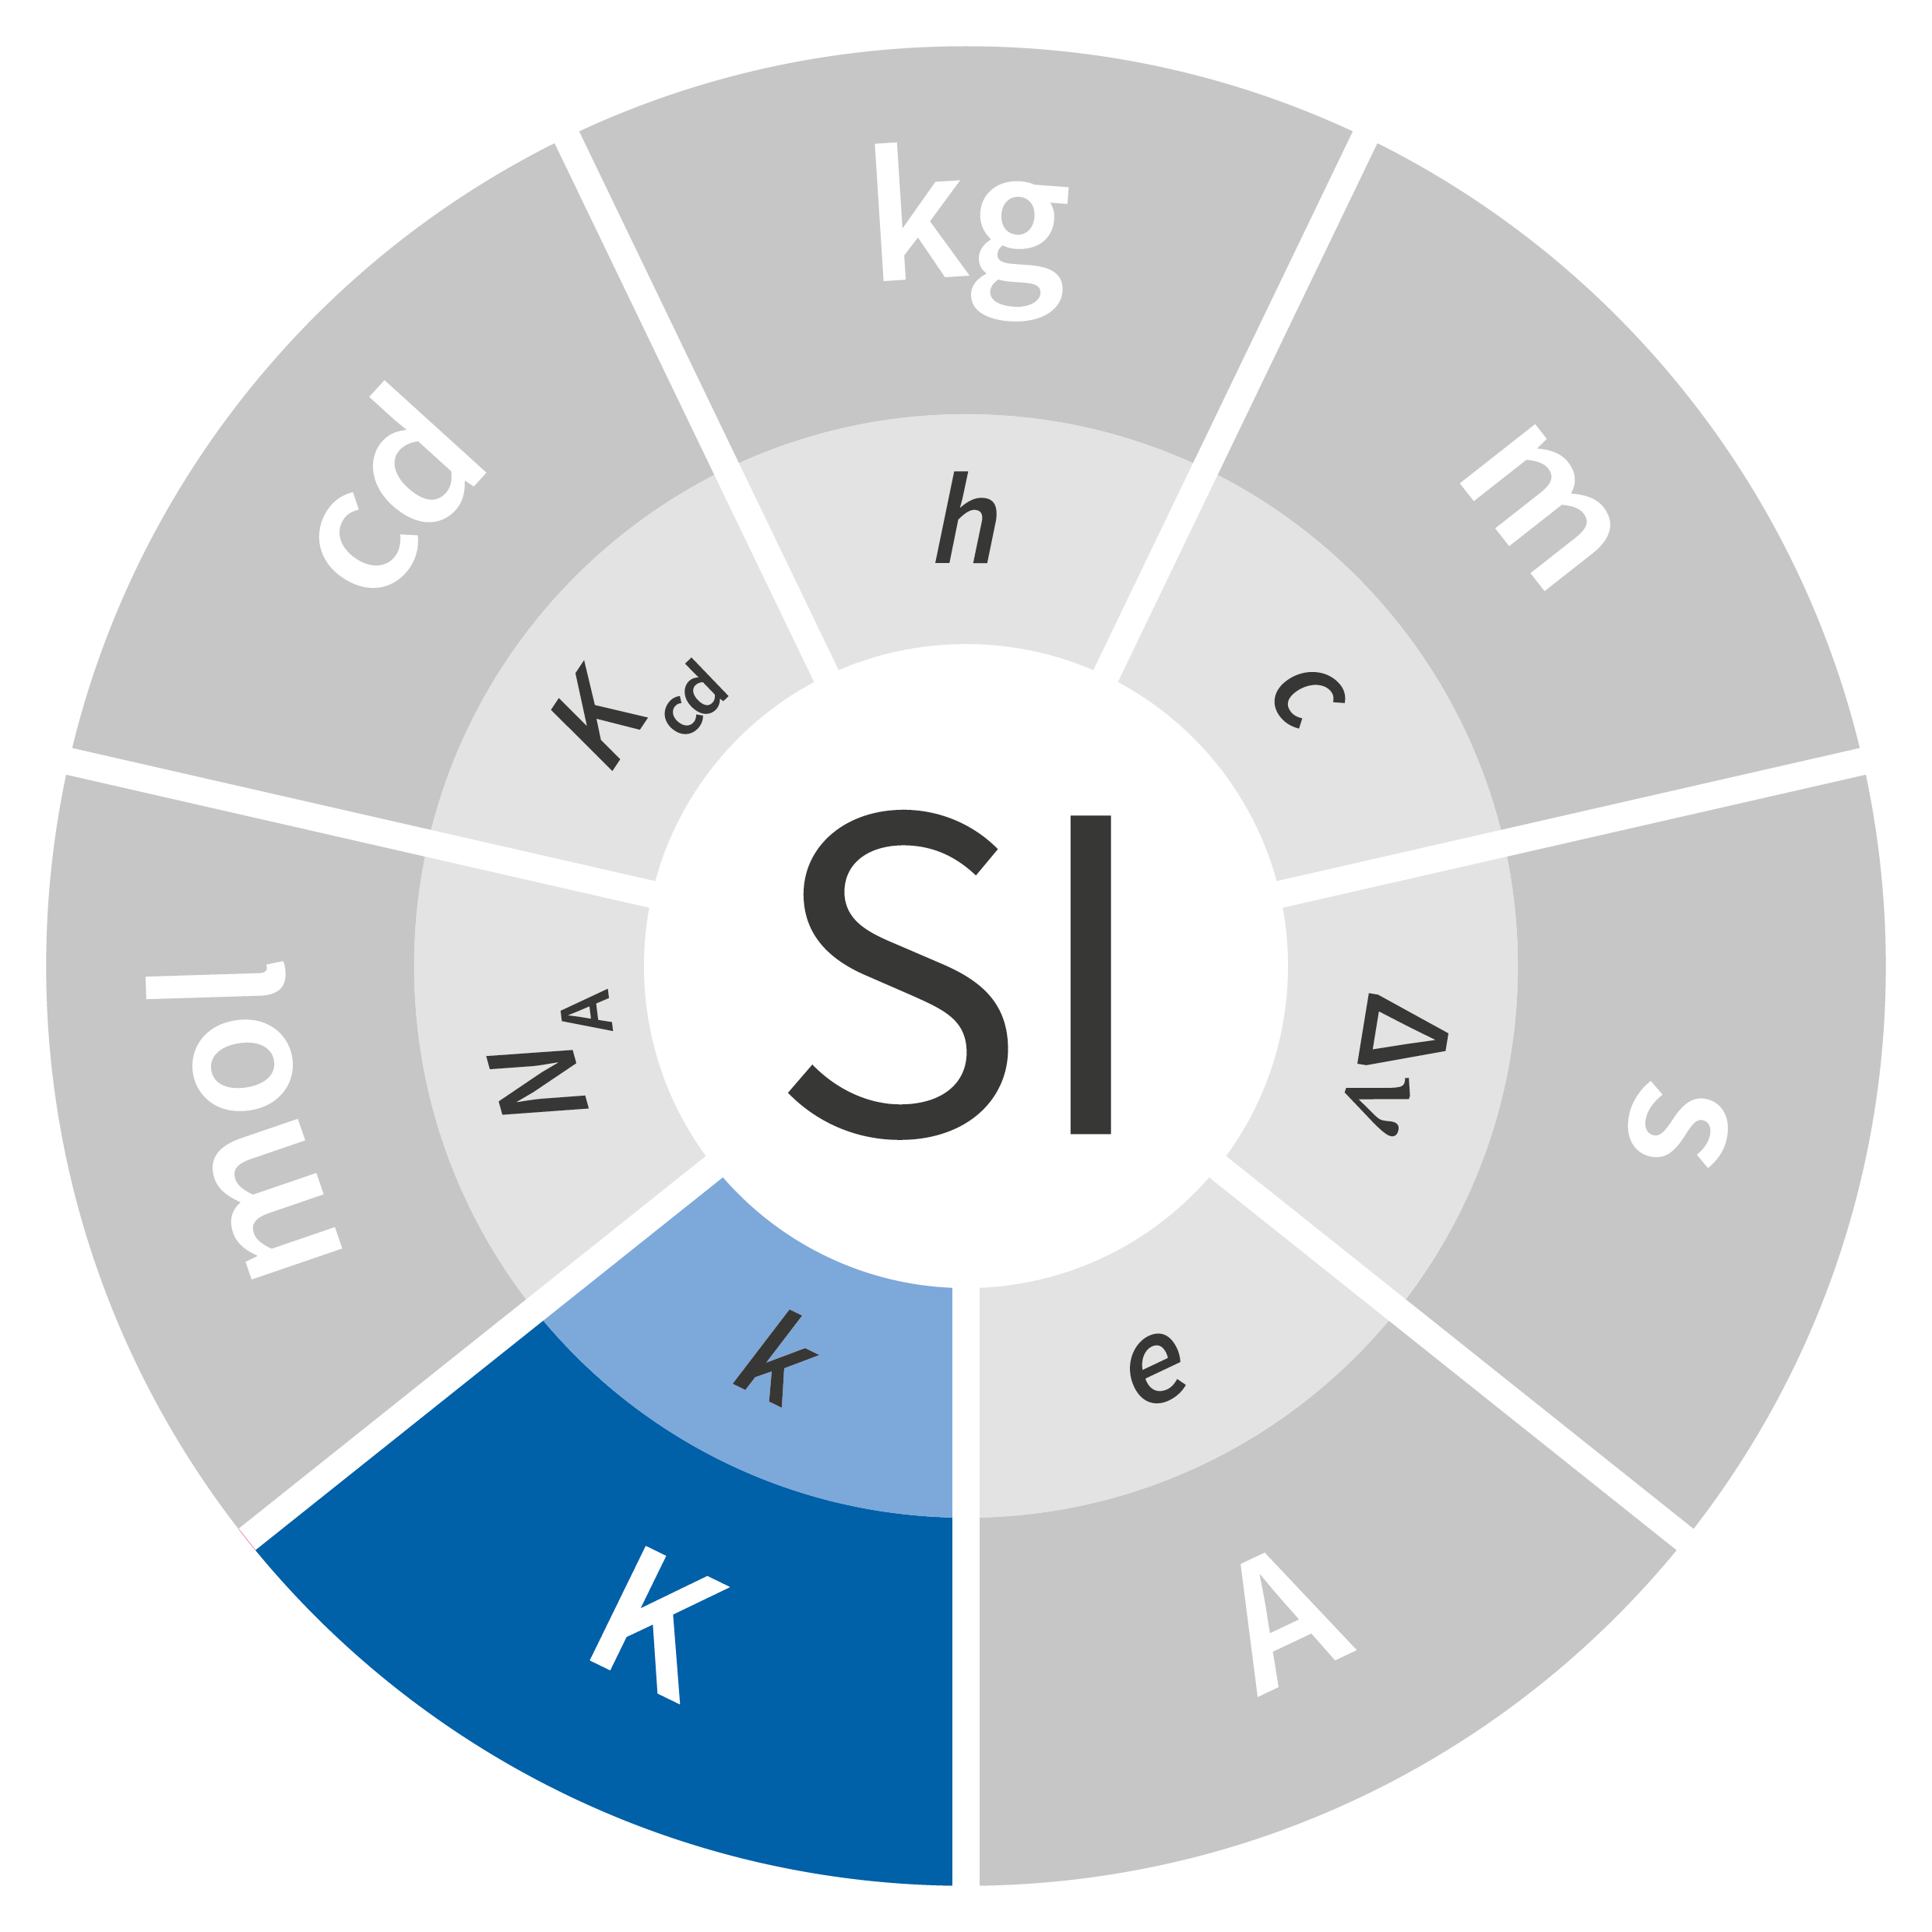 Symbol jednostki miary temperatury termodynamicznej - kelwin K na niebiesko wpisany w logo układu SI w kształcie koła. Pozostałe symbole jednostek wyszarzone. W mniejszym kółku symbole stałych definiujących z zaznaczonym na jasnoniebiesko symbolem Stałej Boltzmana k. Pozostałe symbole na szaro.